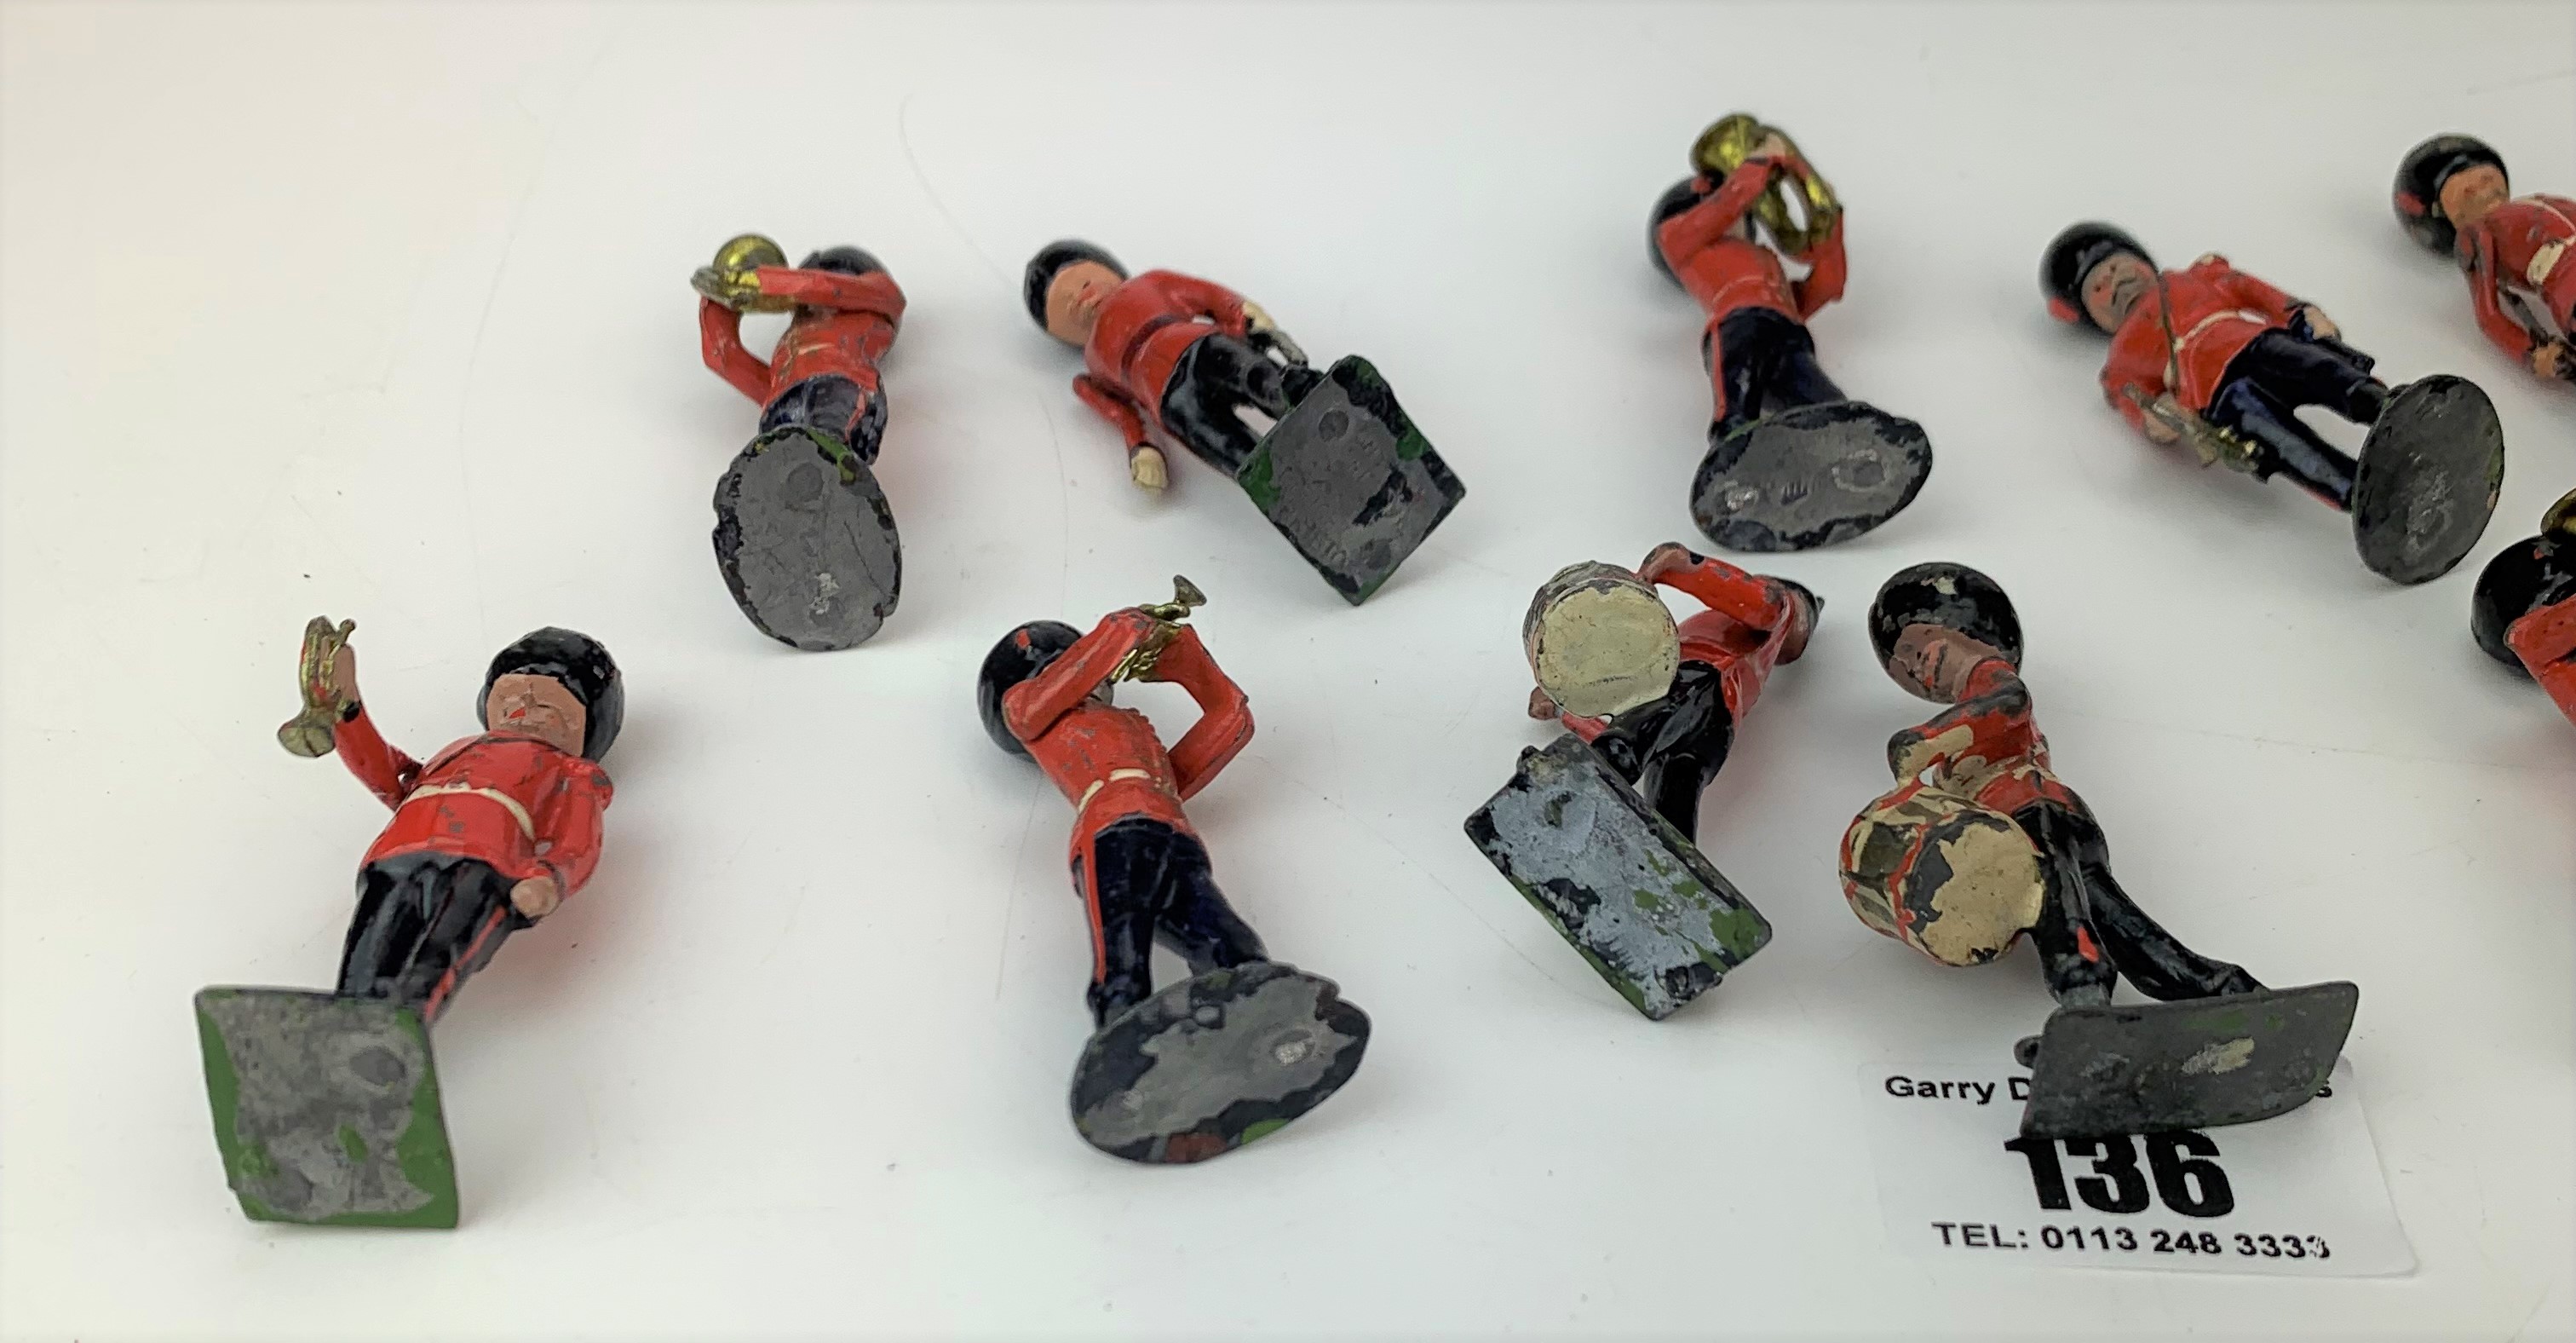 13 Britains metal Guardsmen band figures (1 damaged) - Image 7 of 8